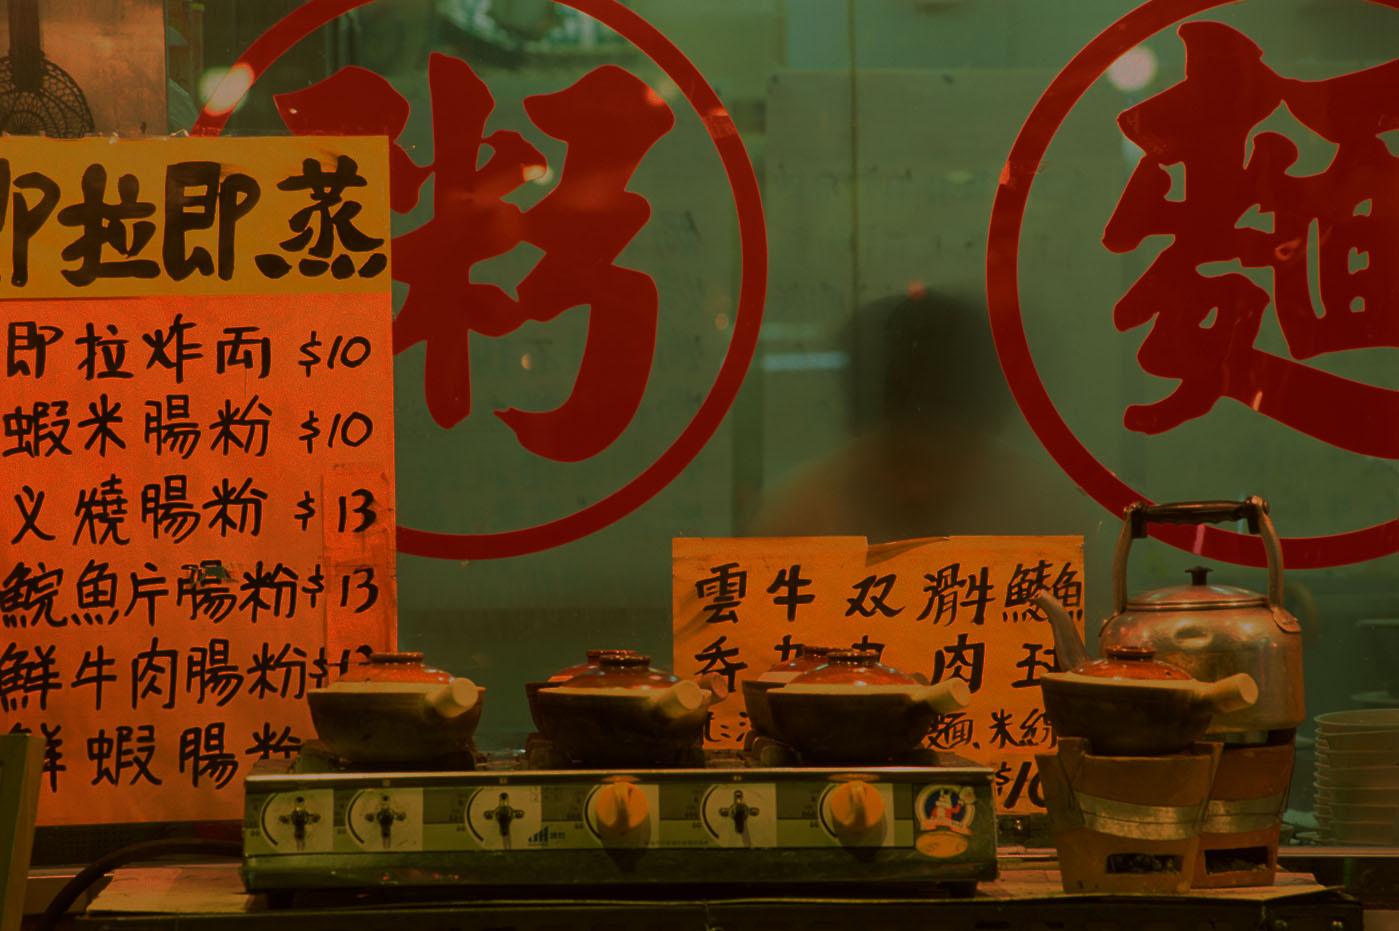 مطعم صيني مع علامات بالصينية.